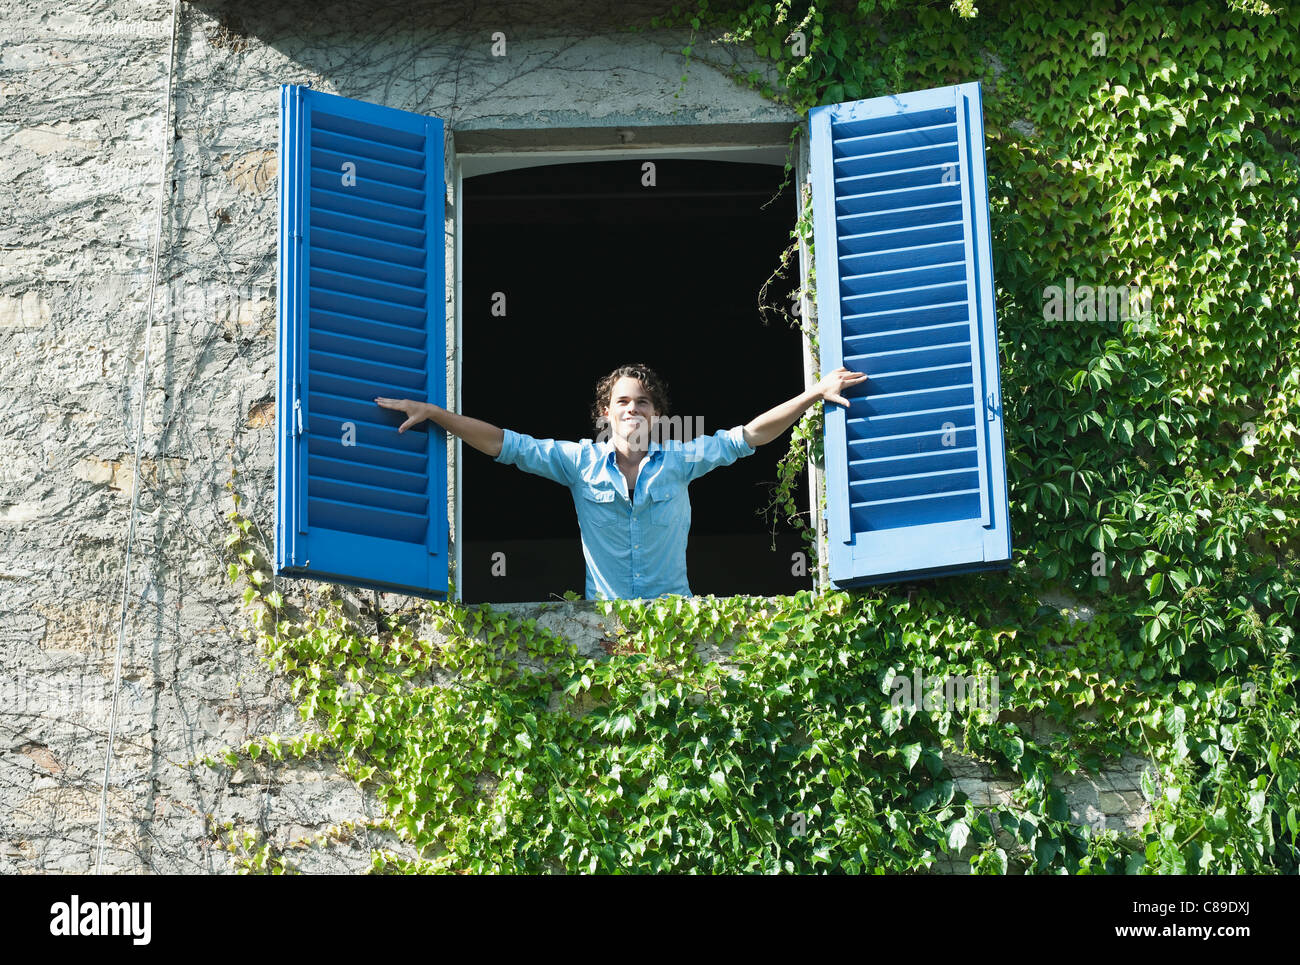 Italie, Toscane, Young man leaning on fenêtre avec volets roulants Banque D'Images